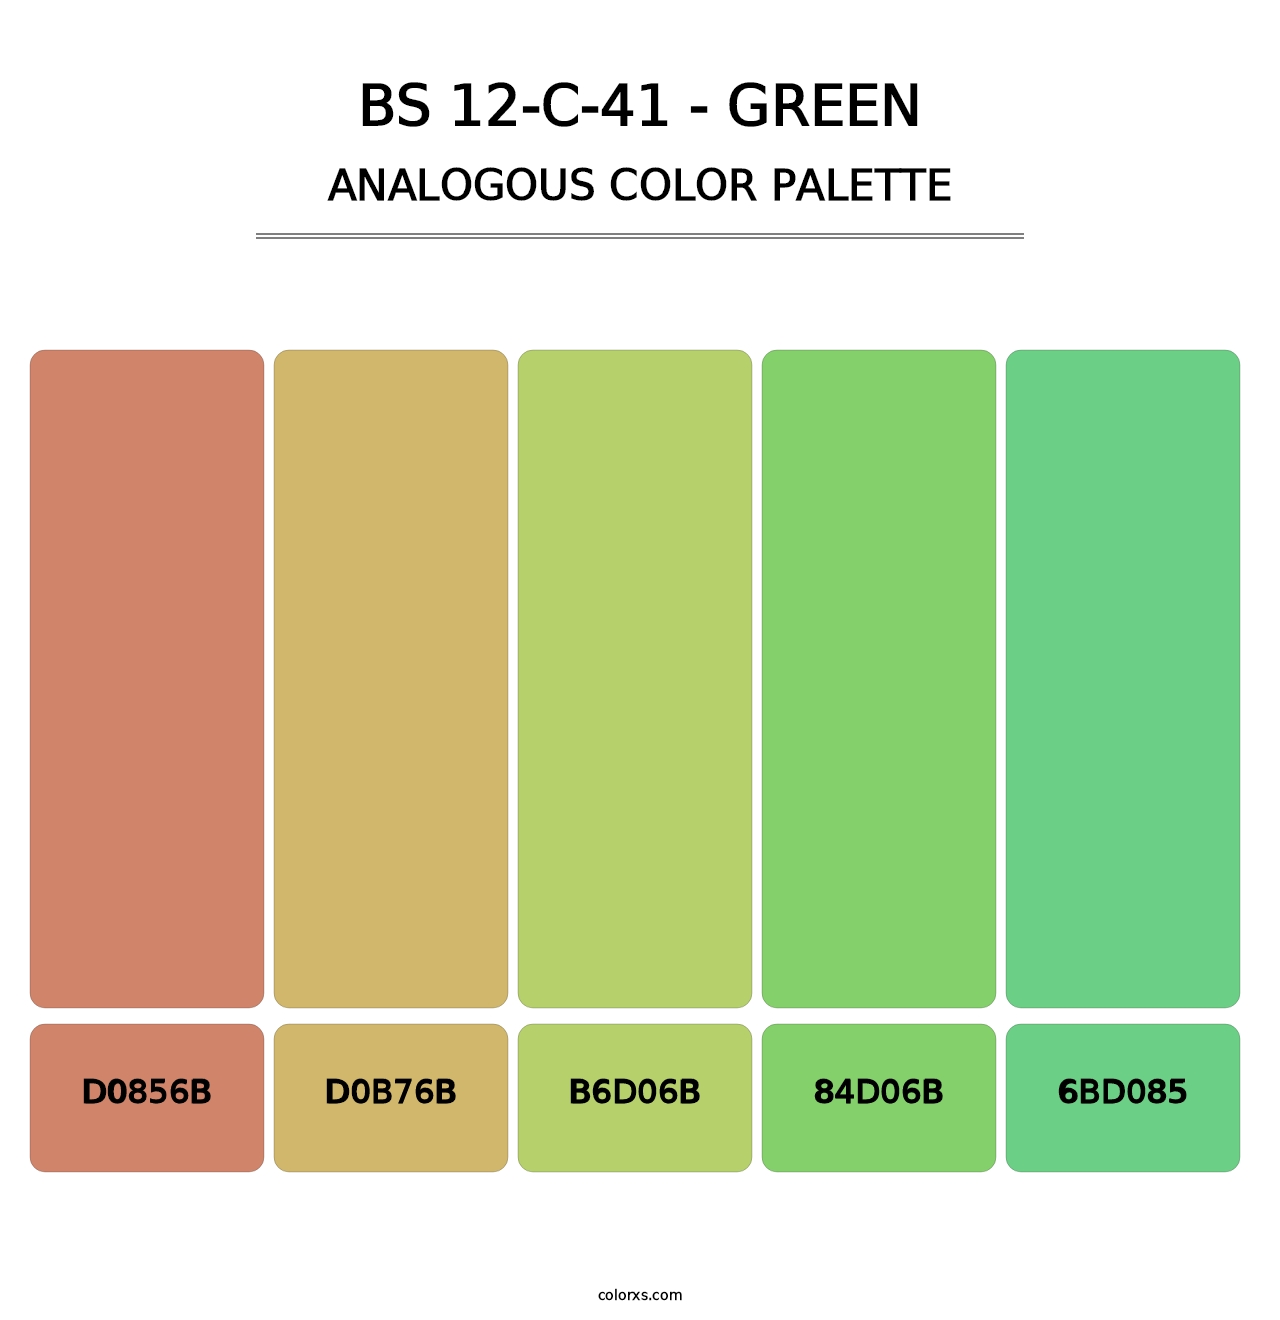 BS 12-C-41 - Green - Analogous Color Palette